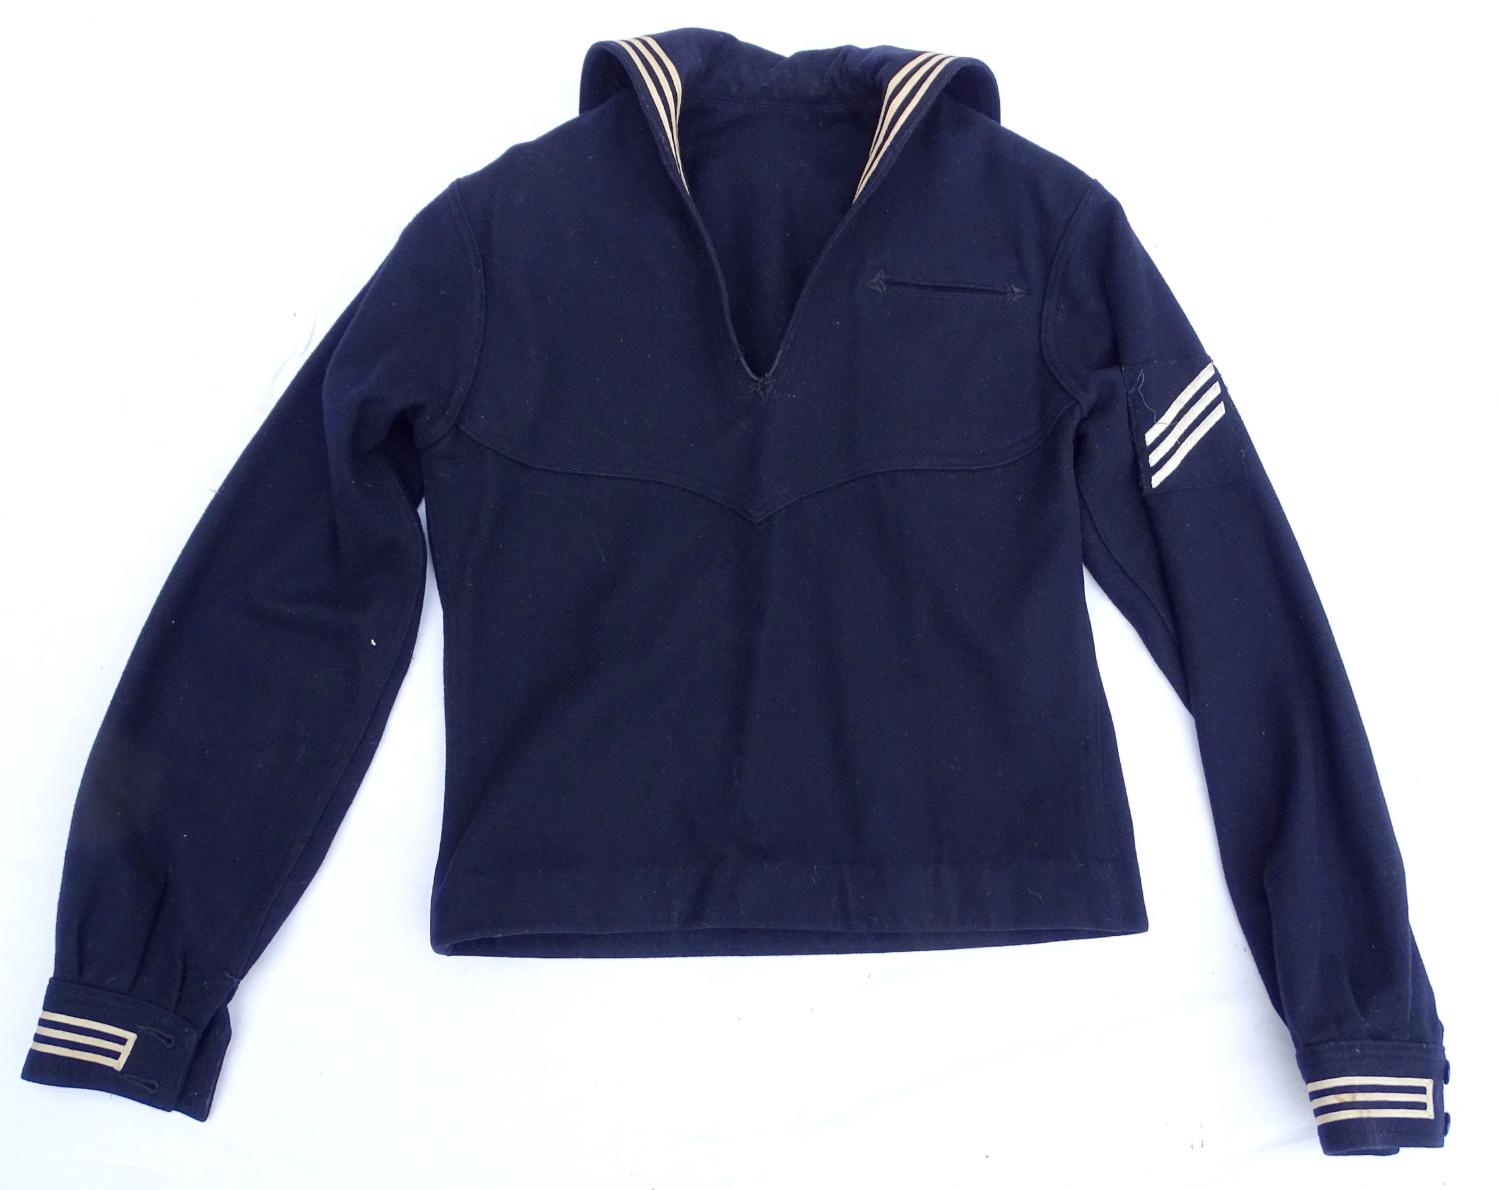 Vareuse de marin US Navy. Dress blue jumper